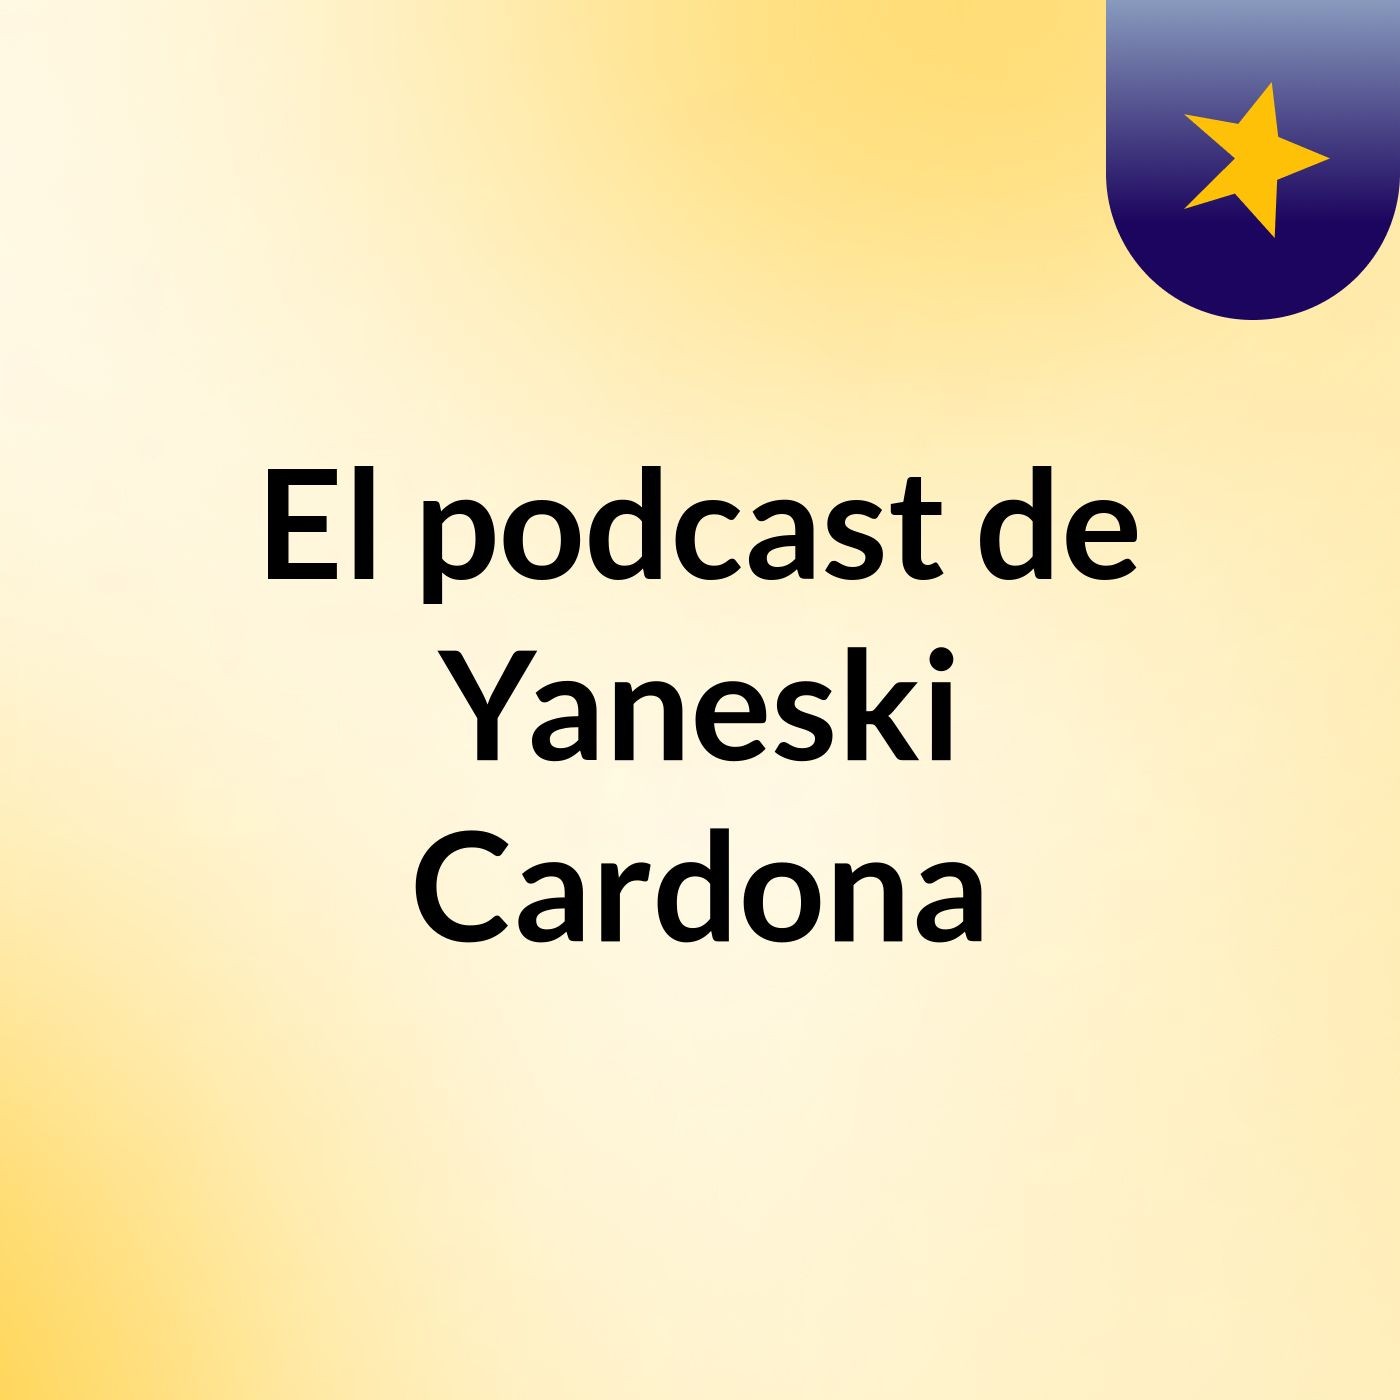 Ecosistema Y Biosfera - El podcast de Yaneski Cardona